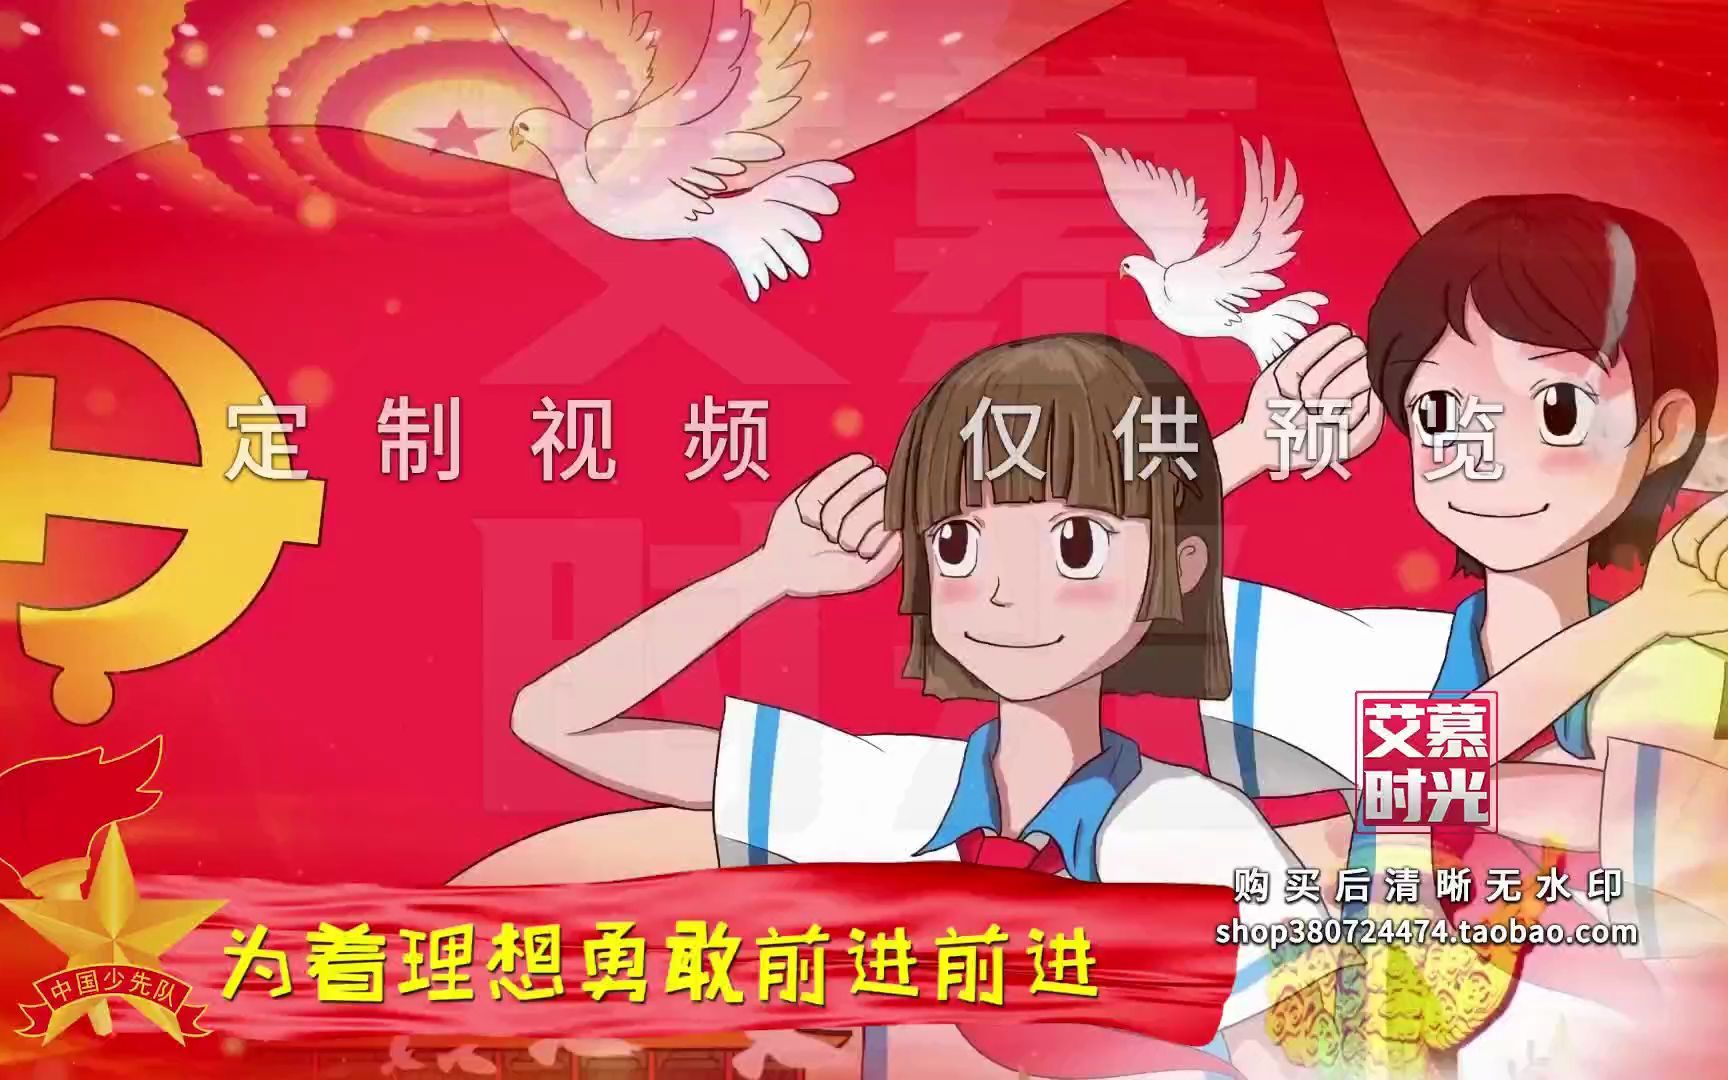 [图]中国少年先锋队队歌伴奏歌词爱国红歌红领巾舞美背景 LED大屏视频素材